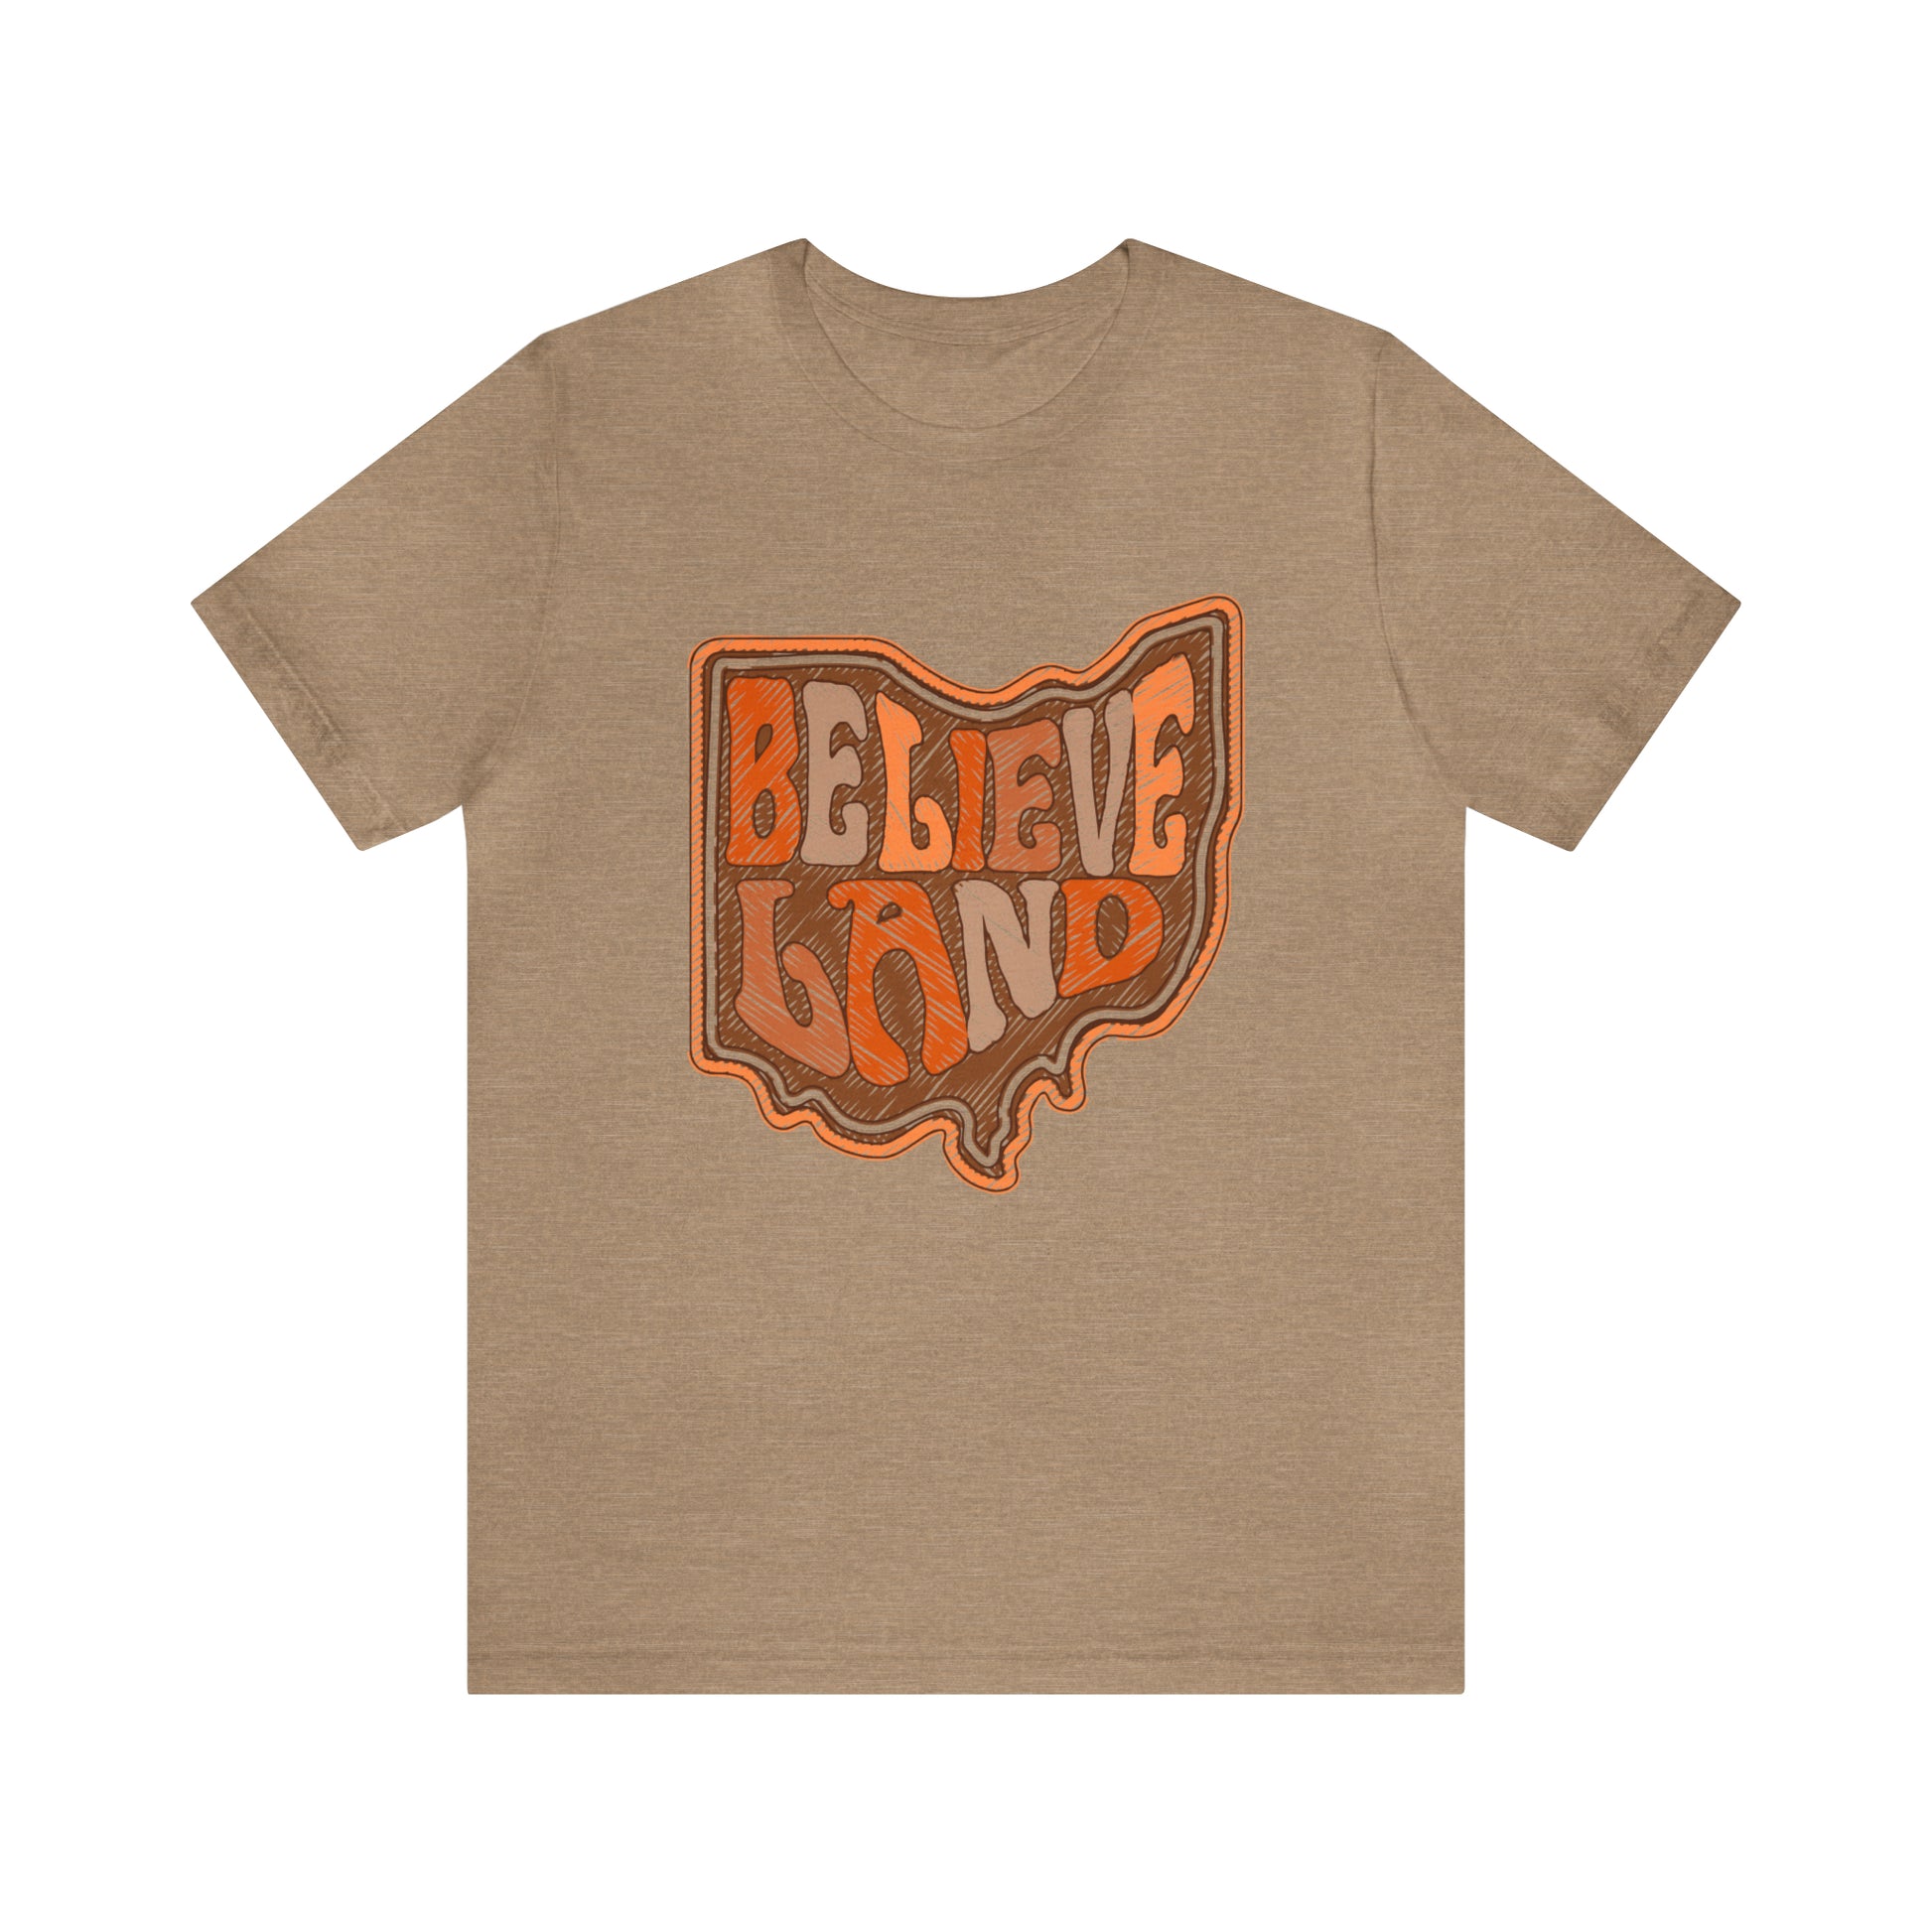  Cleveland Browns Short Sleeve T-Shirt - Browns Believeland NFL Football Tee - Men's Women's Oversized Tee - Design 6